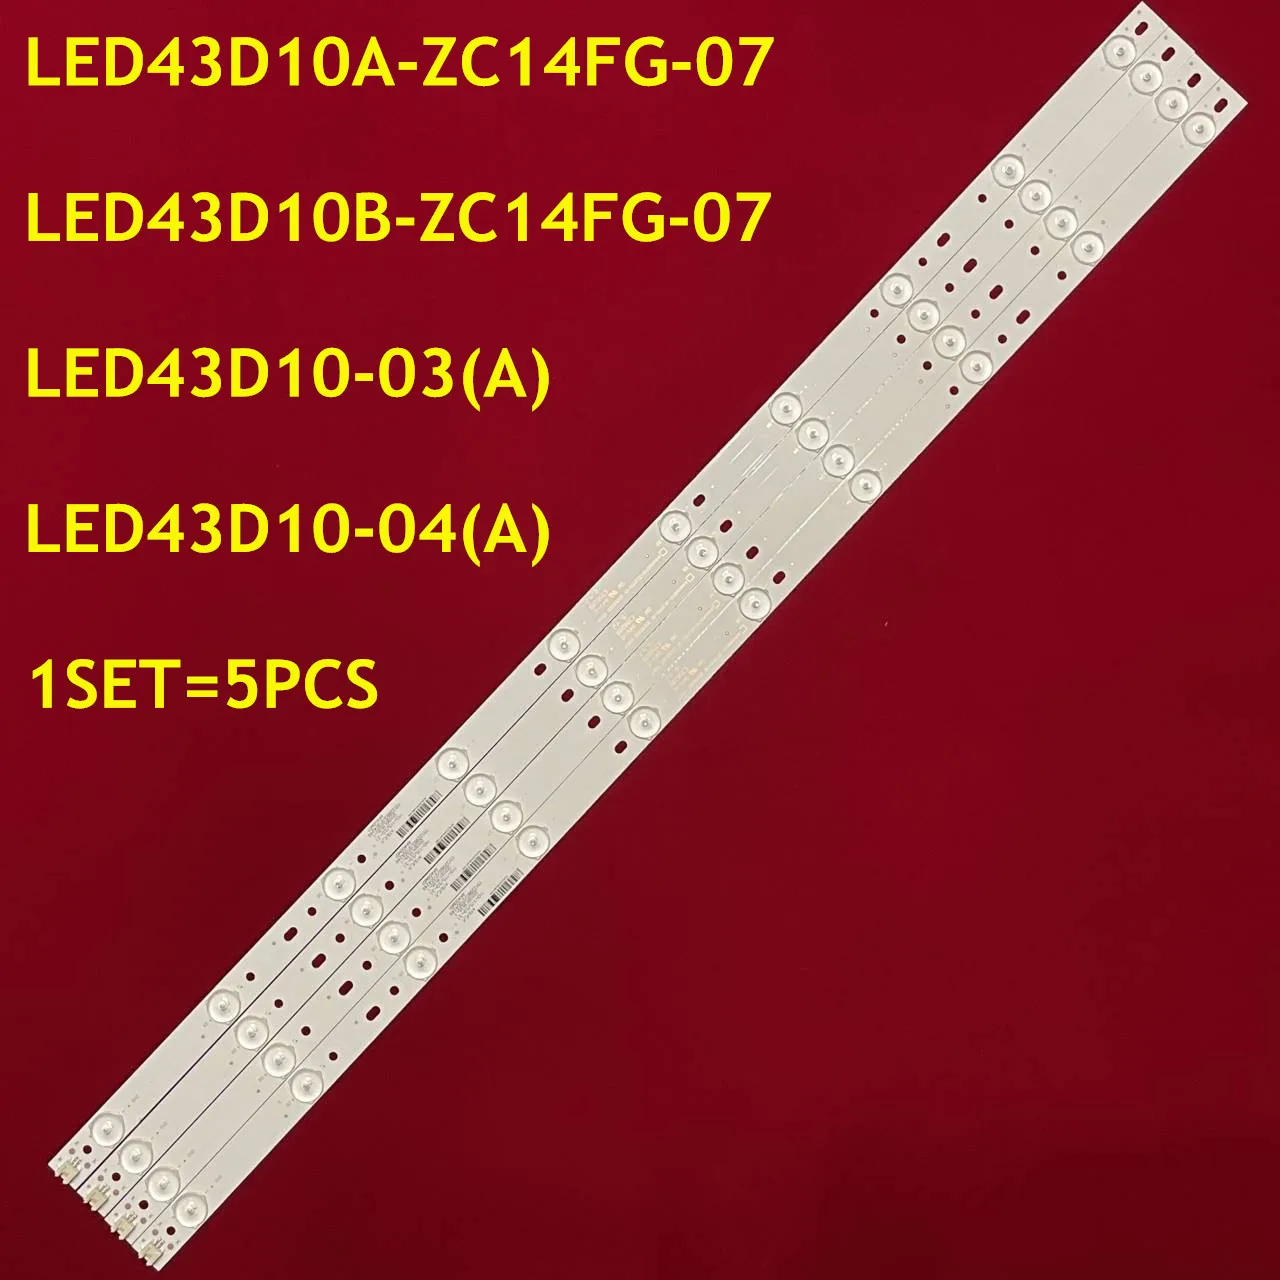 

5PCS LED Strip LED43D10A-ZC14FG-07 LED43D10B-ZC14FG-07 LED43D10-03(А ) LED43D10-04(A) 30343010202/01 For LG 43“ TV FD4351A-LU